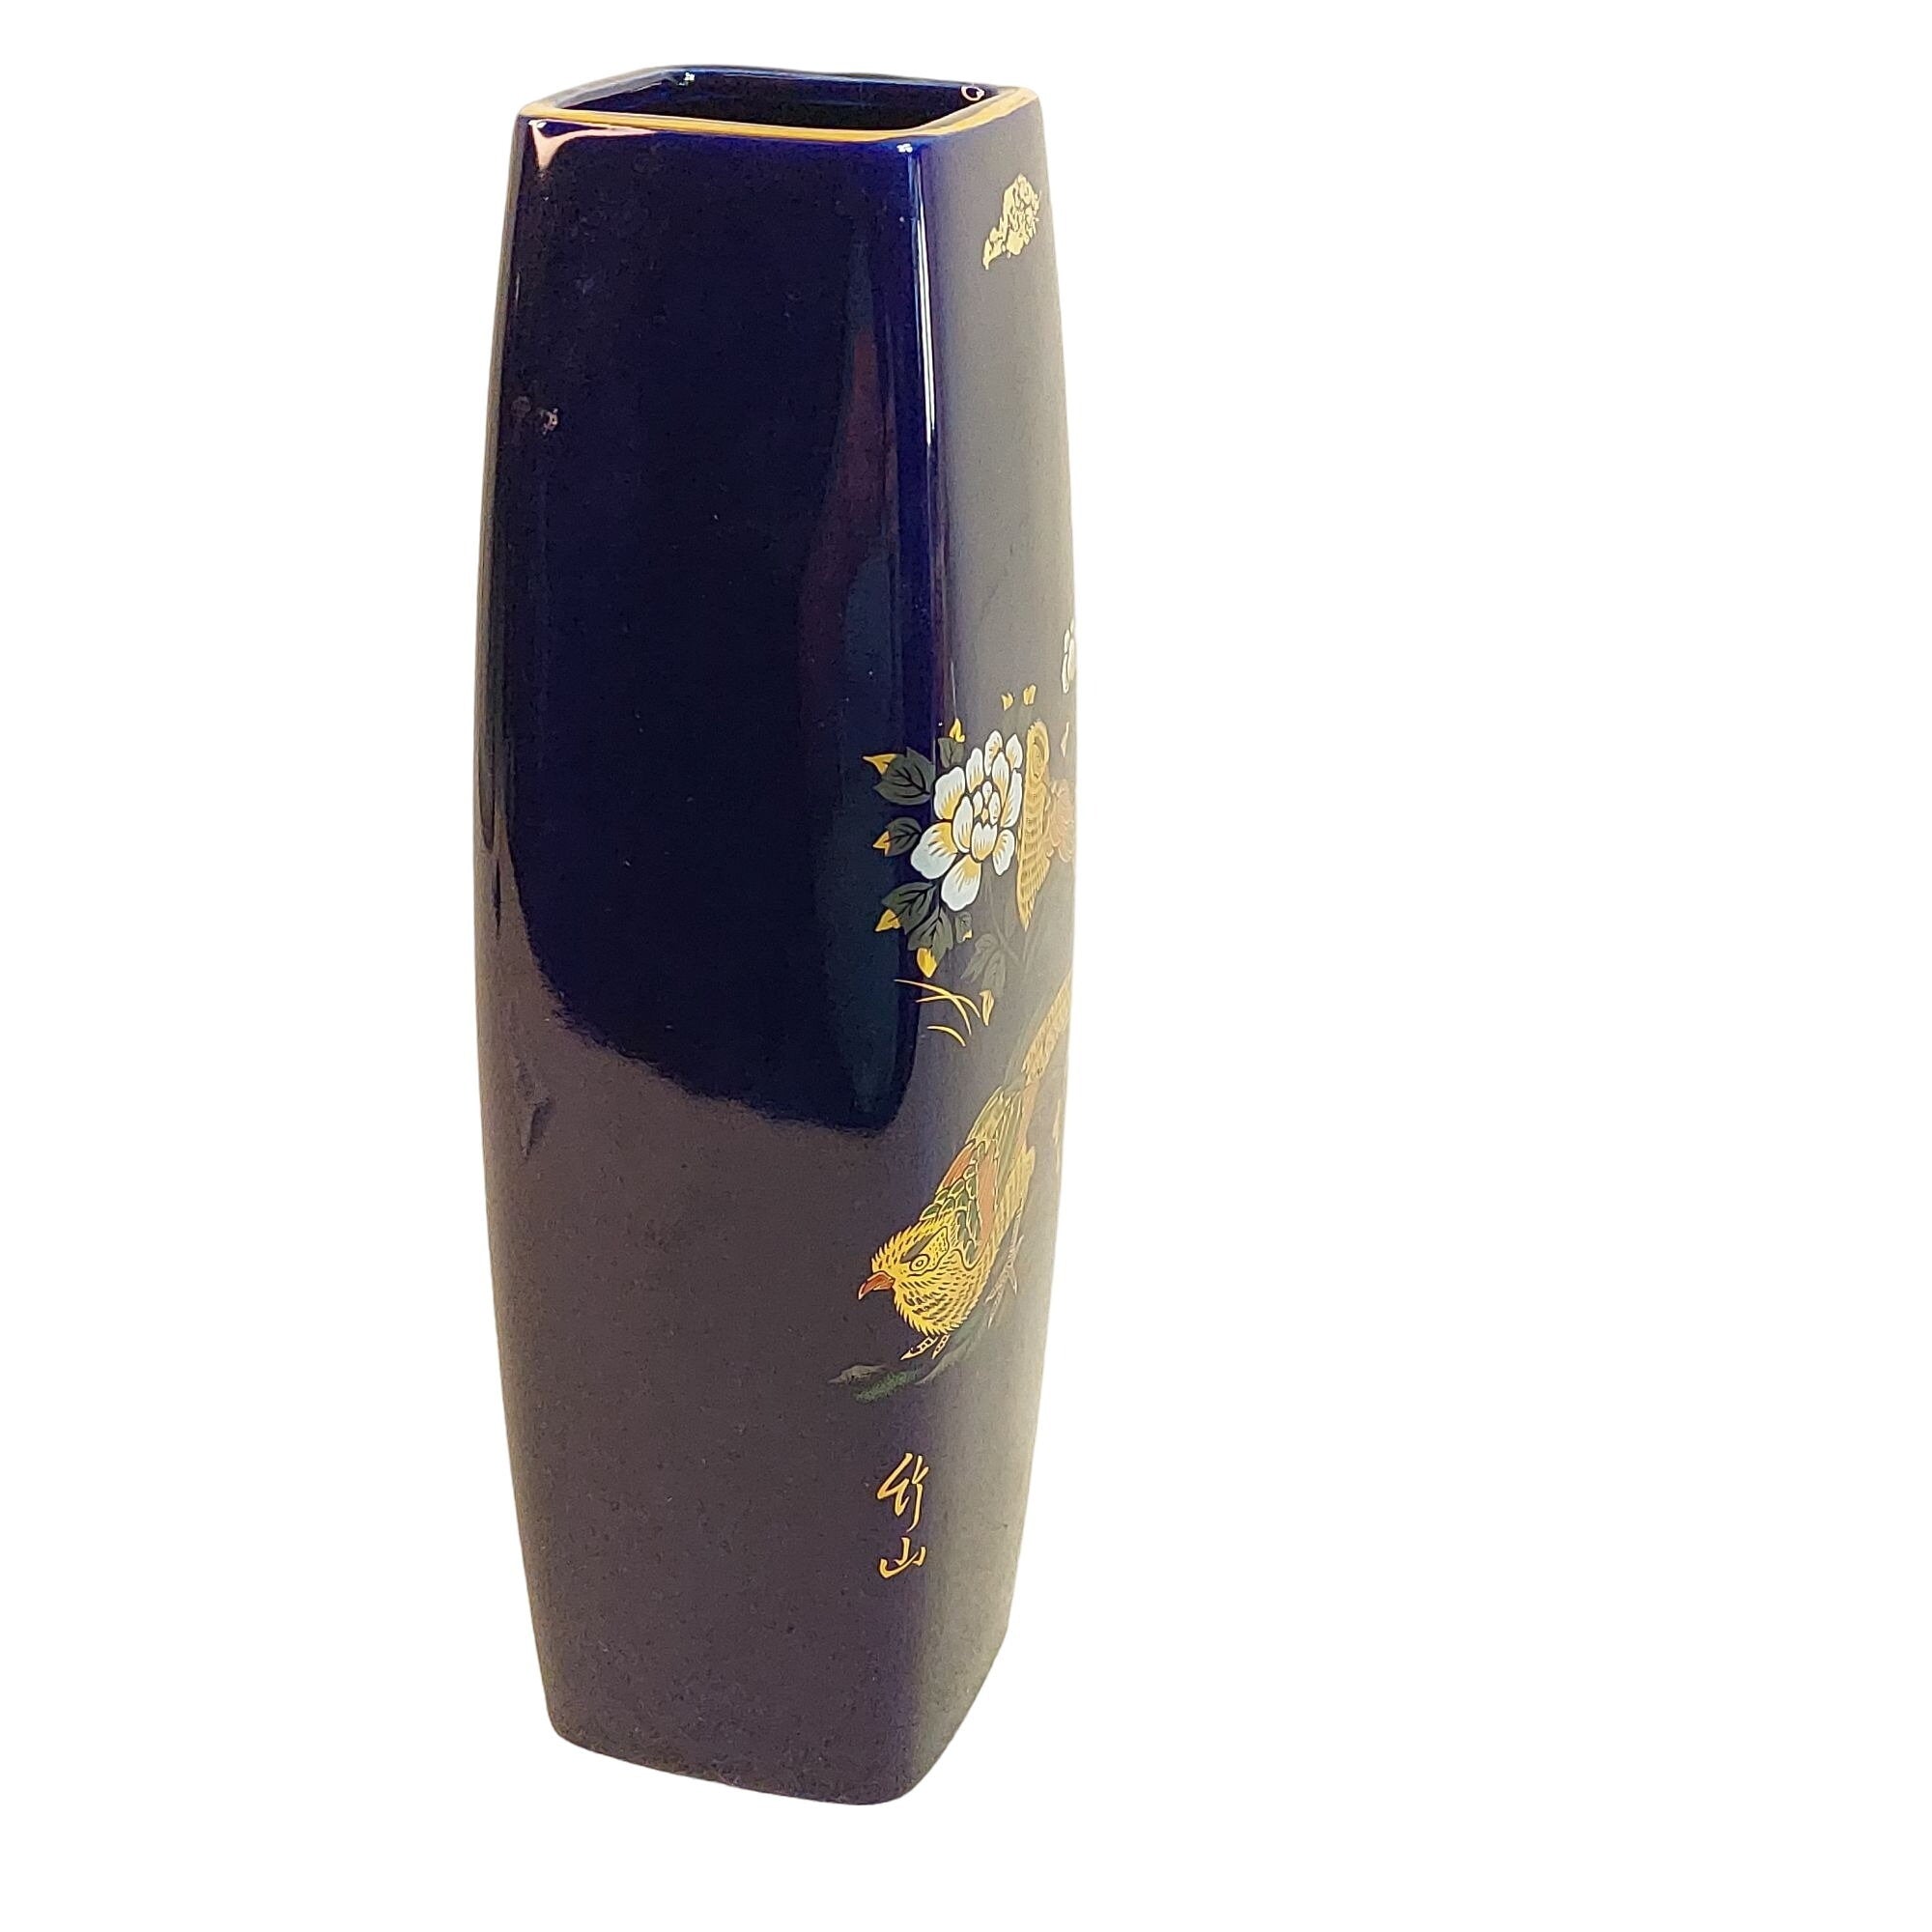 Vase 4 Sided Birds Floral Blue Cobalt Ceramic Asian Home Decor 9.75"